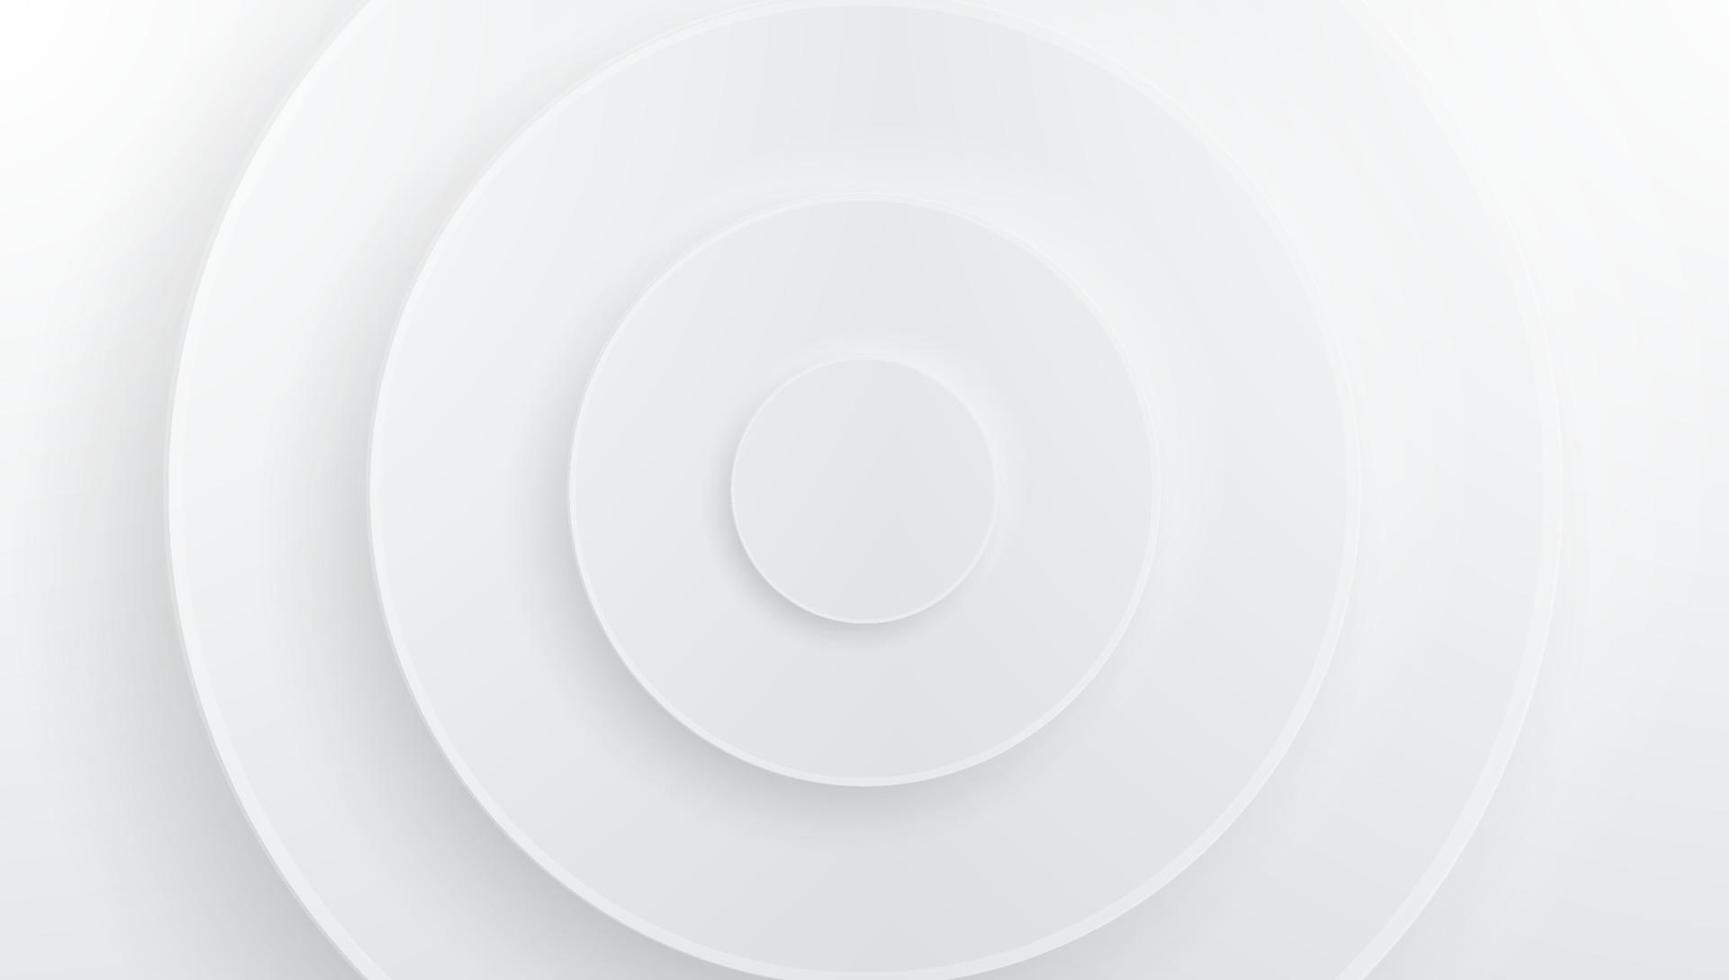 minimalista ed elegante, moderno sfondo bianco forma astratta del cerchio con sovrapposizione di ombre linea dorata effetto disegno vettoriale illustrazione